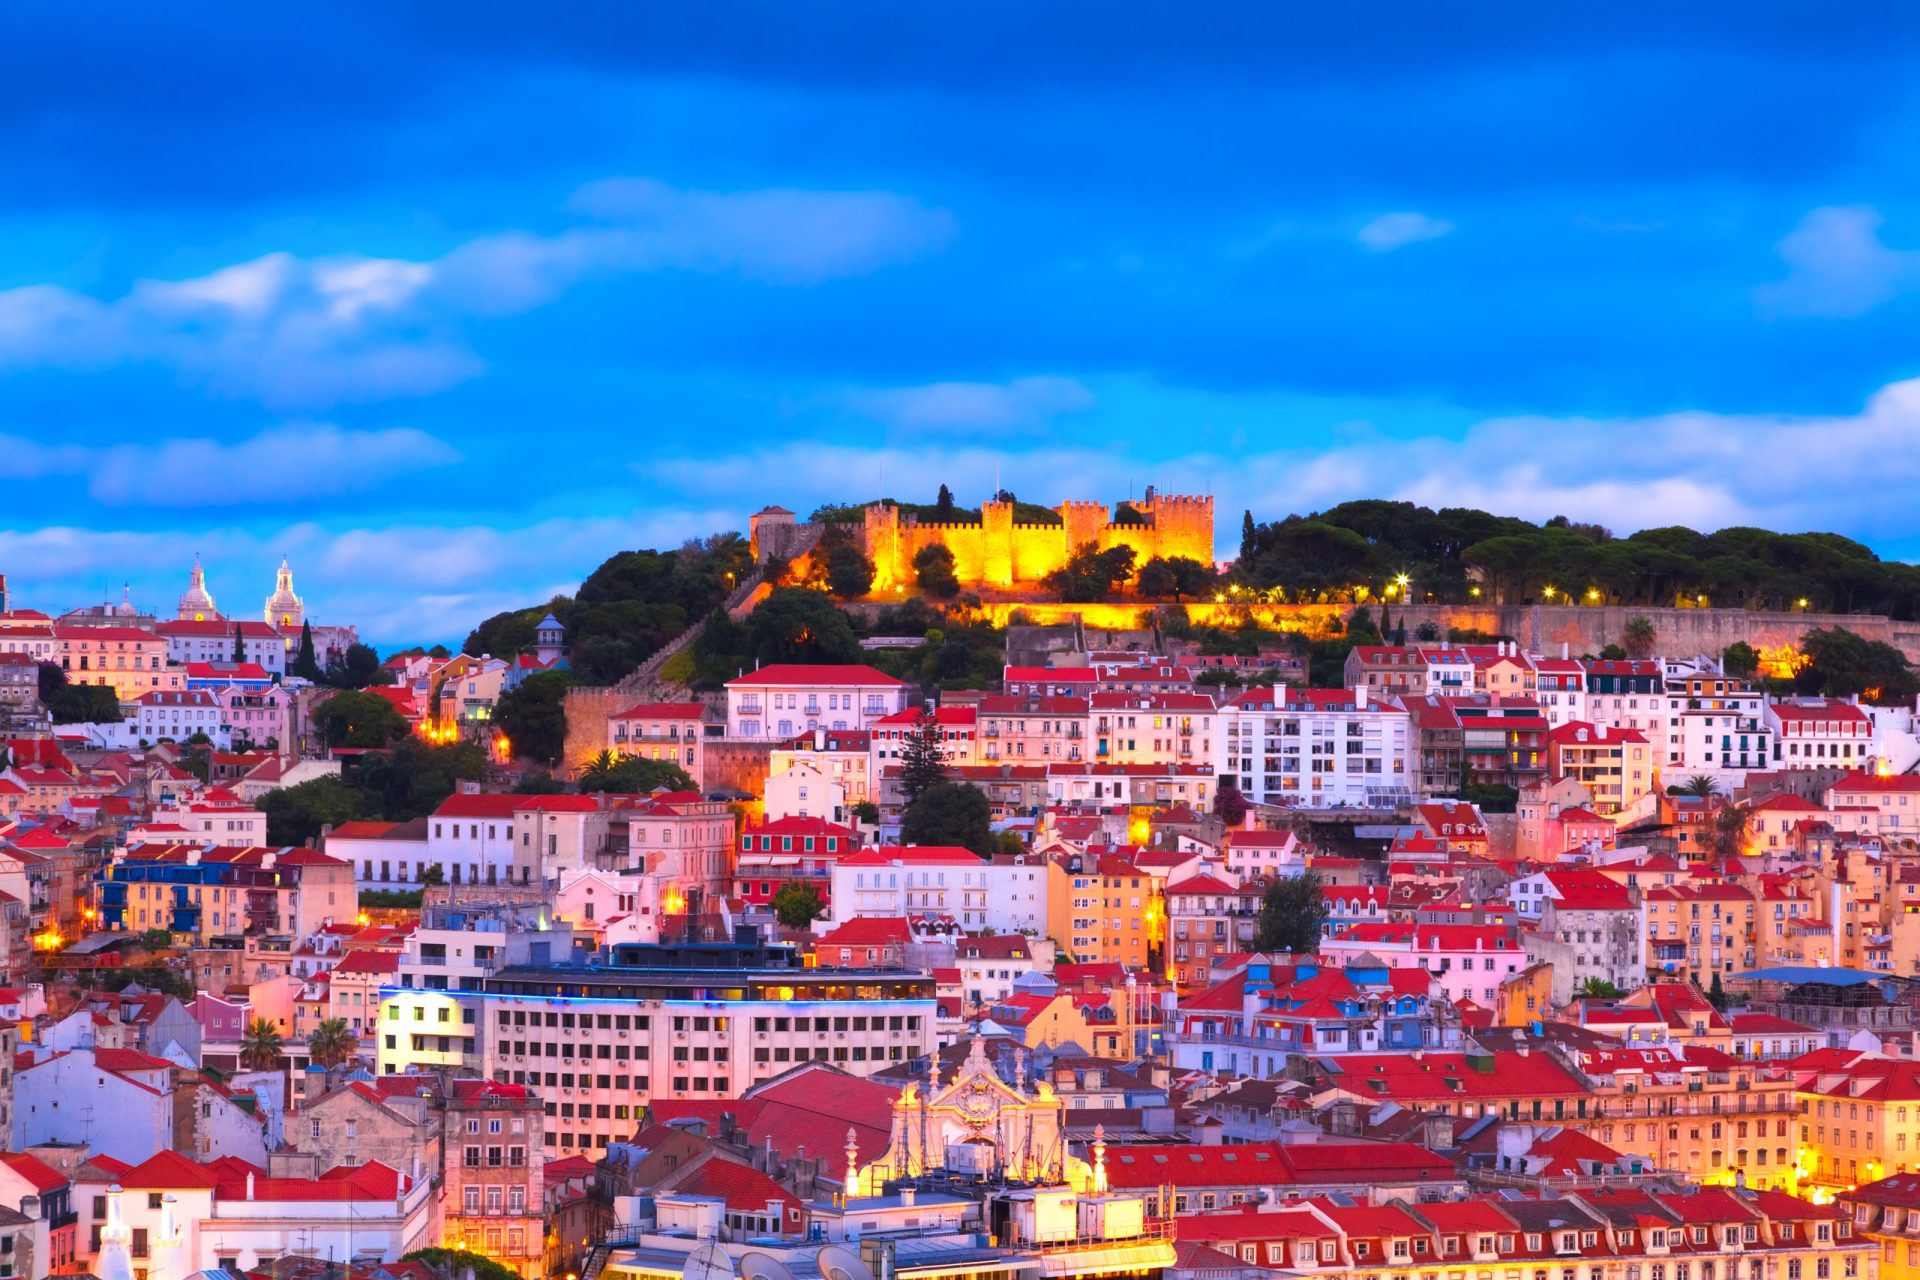 Descubra quais as razões que levam os turistas a viajar para Portugal